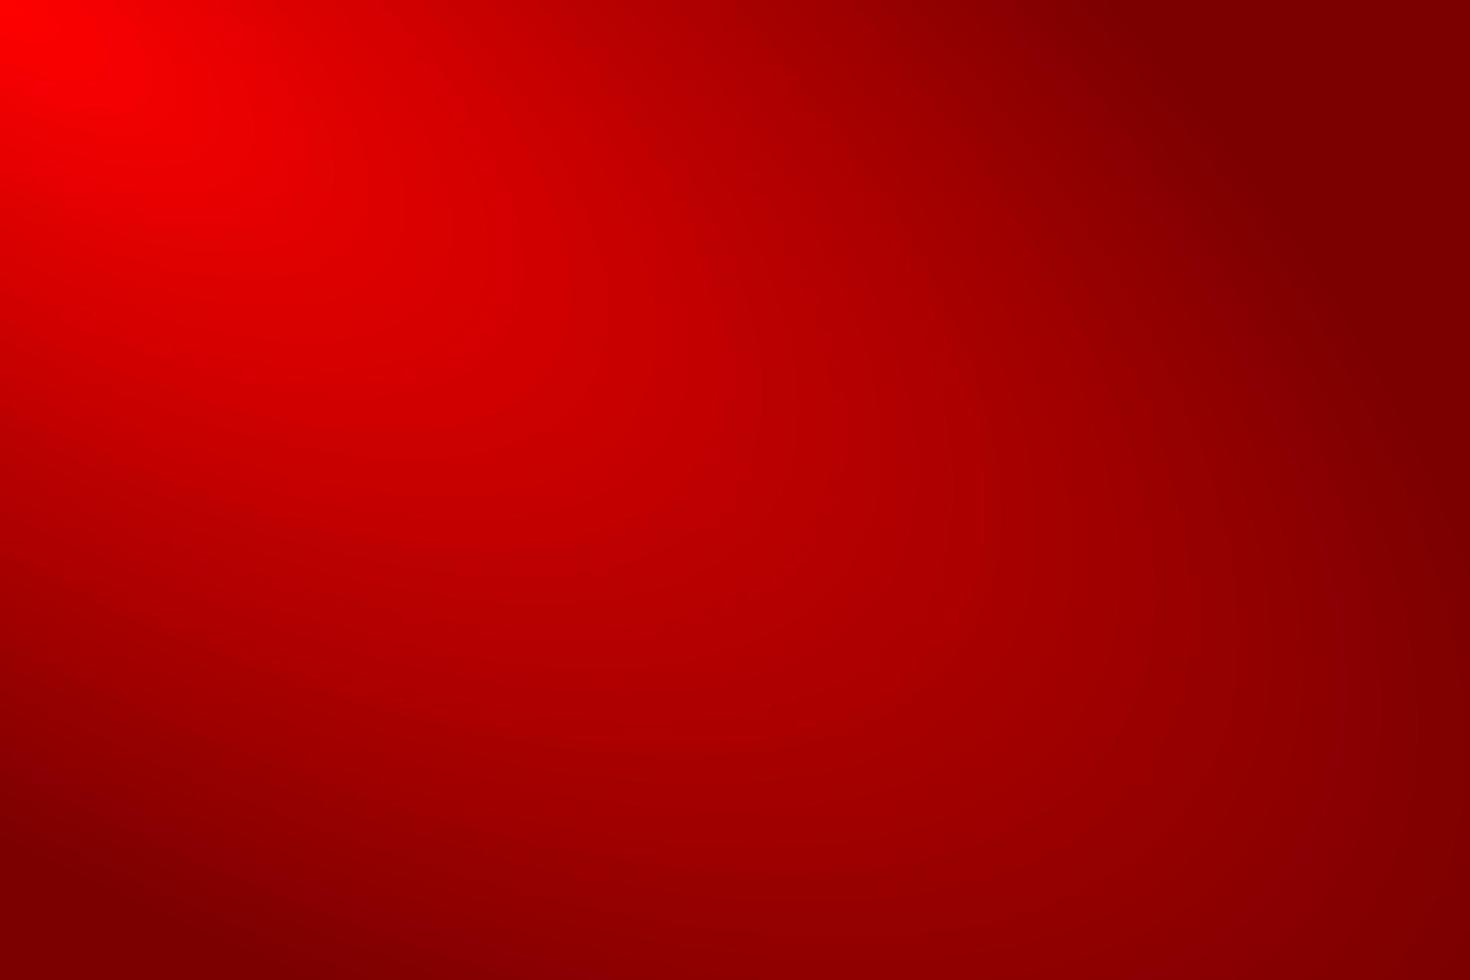 rote Hintergrundfarbe für Papierleinwand oder Karton vektor